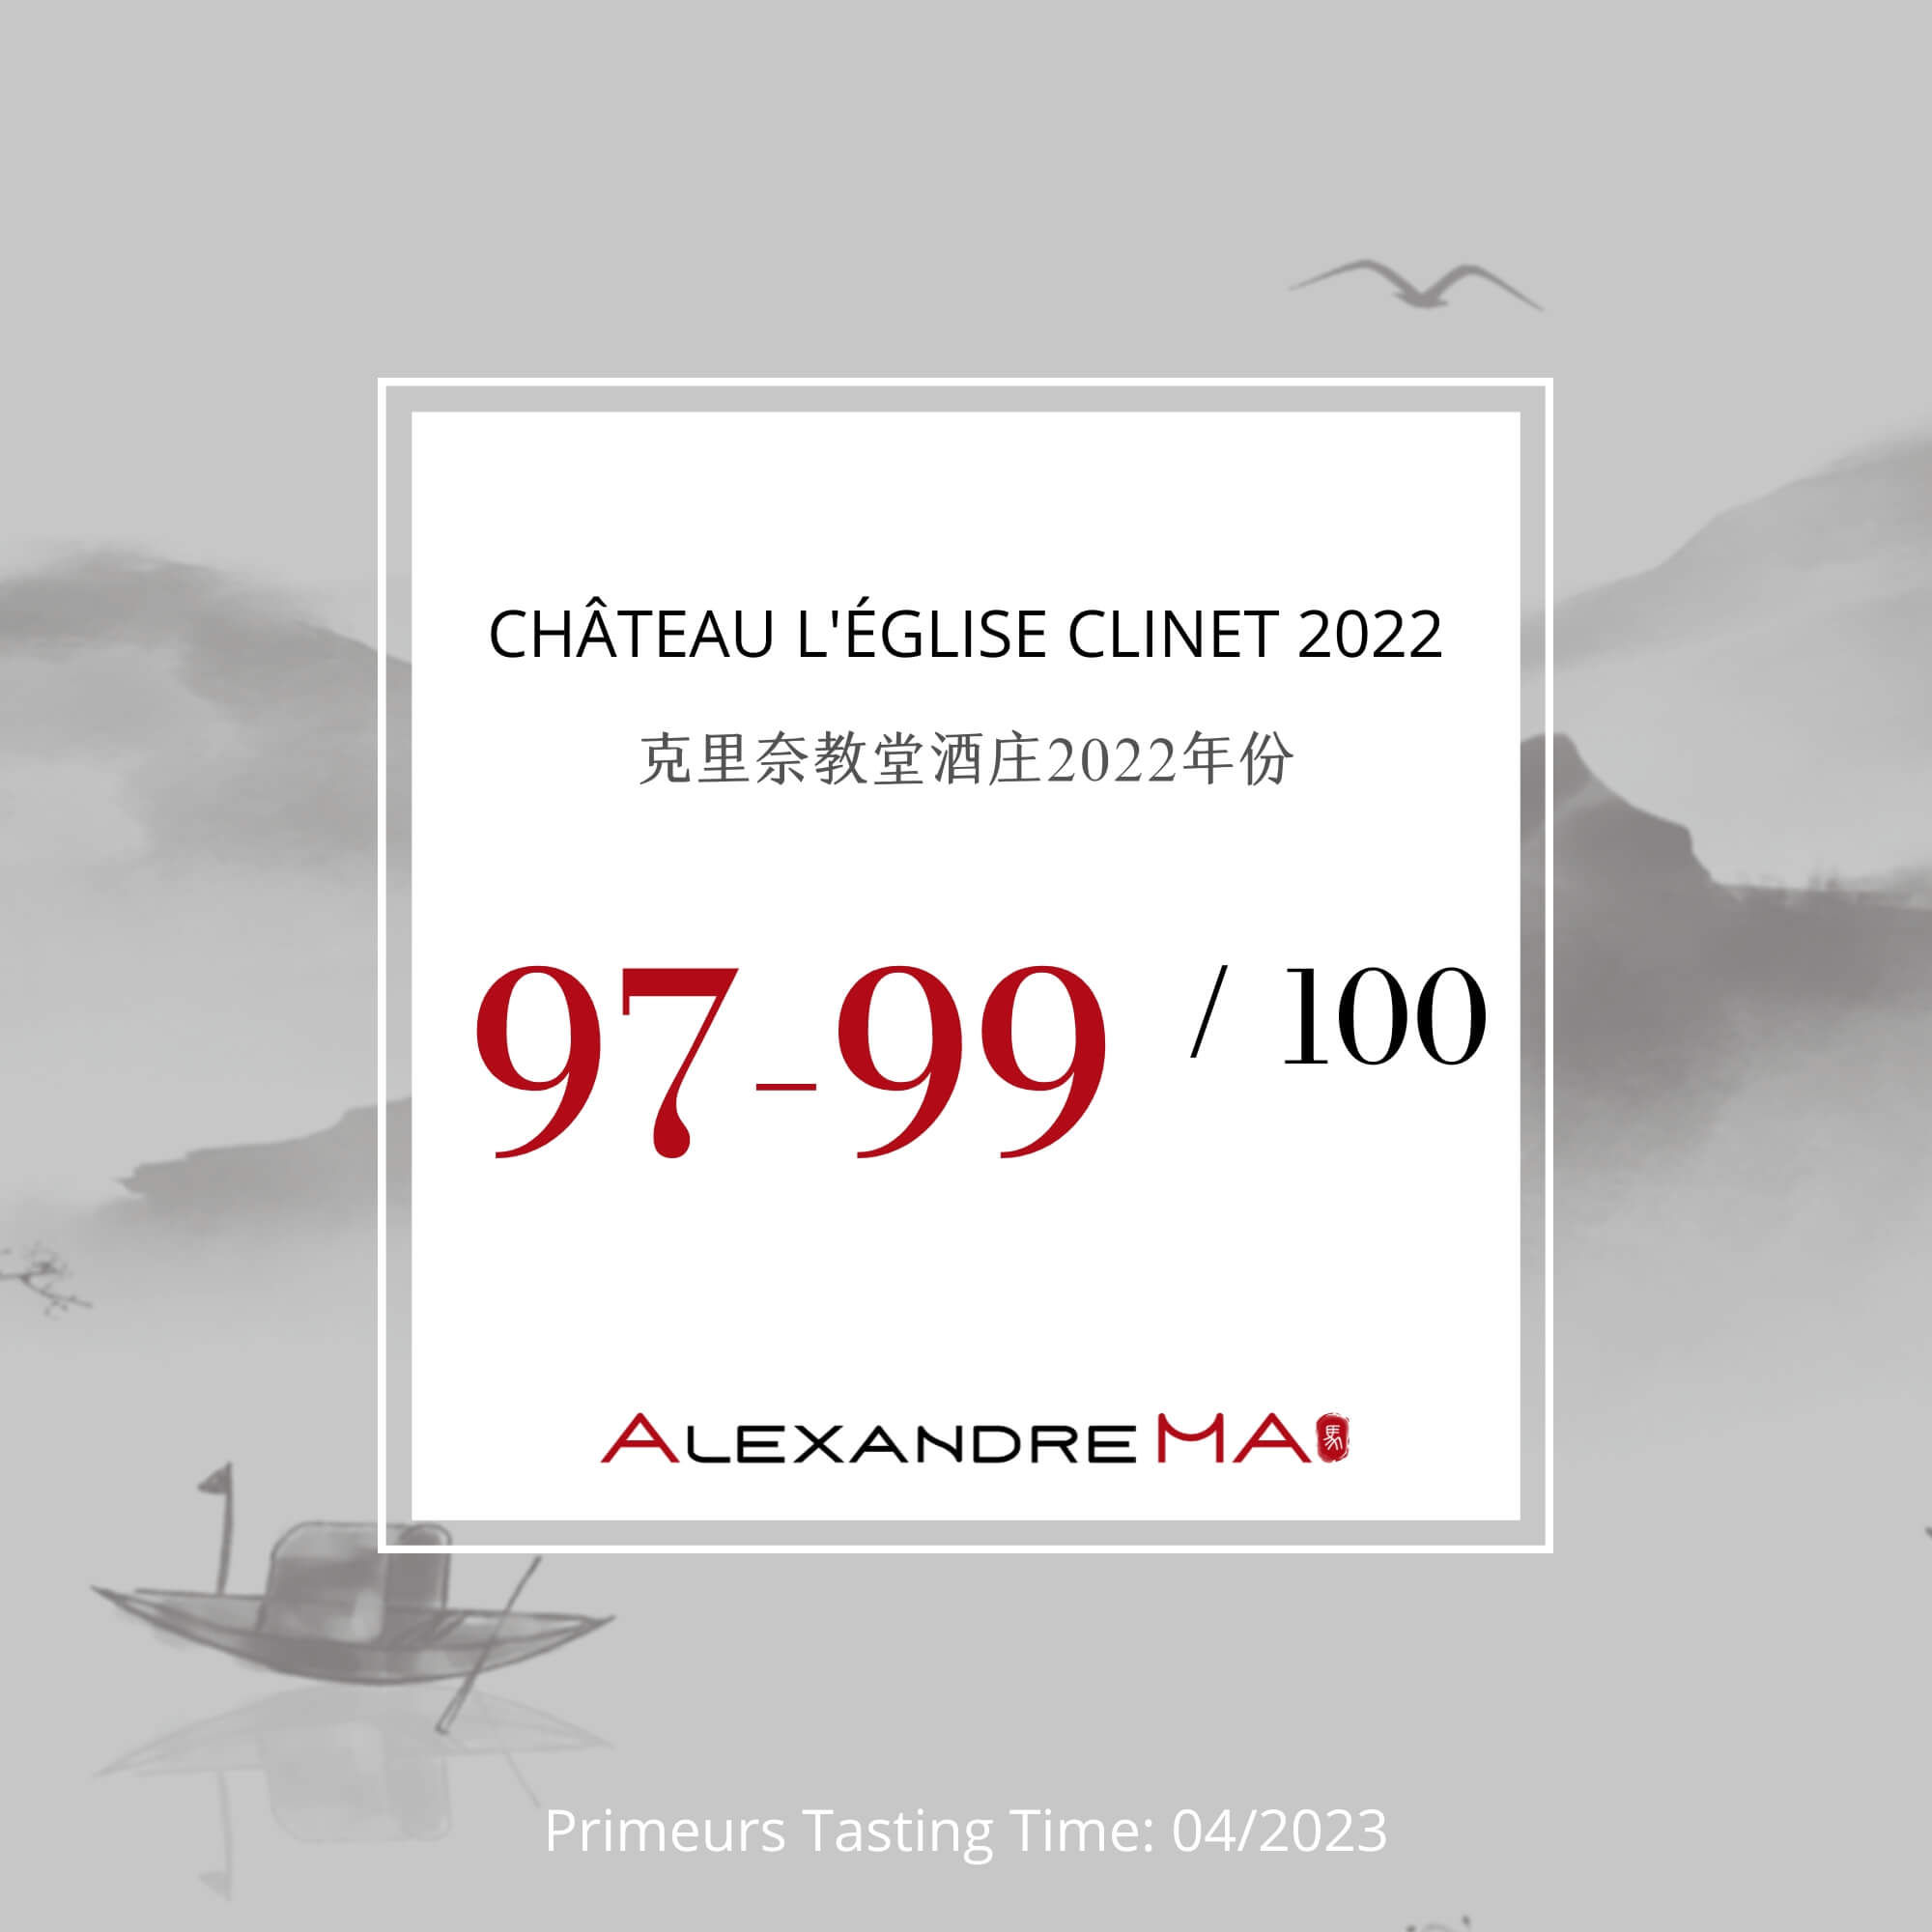 Château L’Eglise Clinet 2022 Primeurs - Alexandre MA